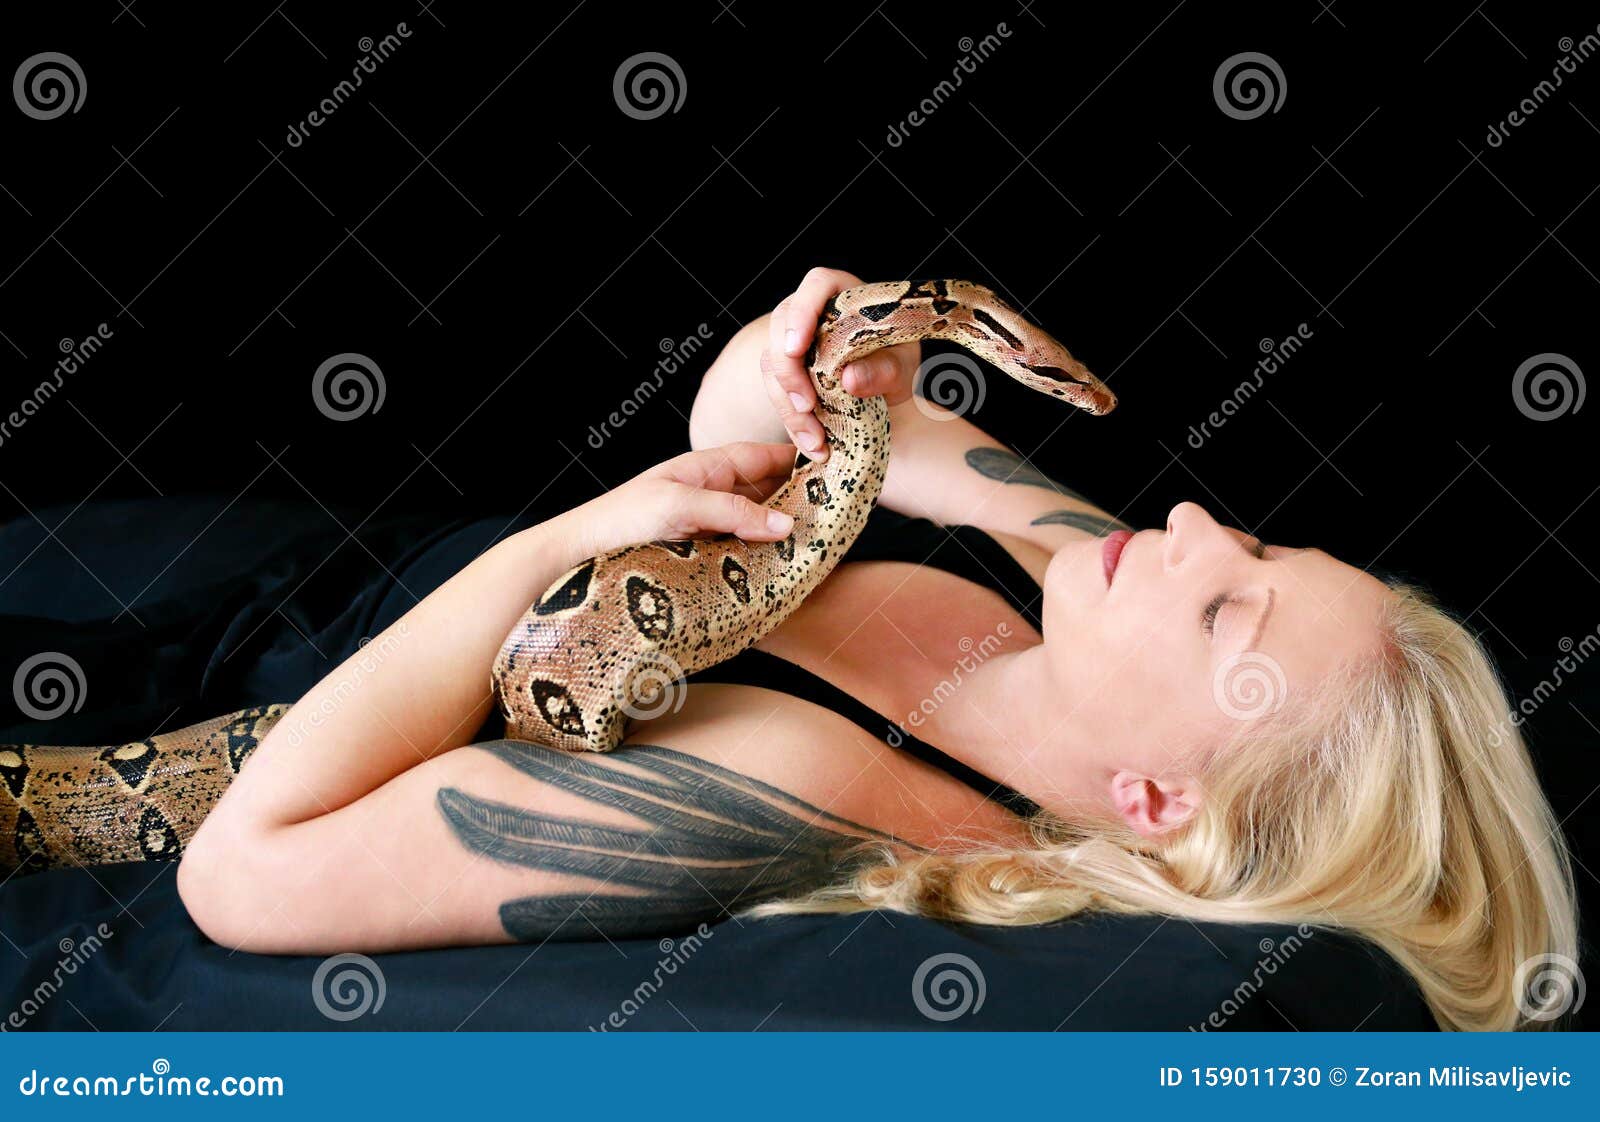 Держать змею в руках. Девушка держит змею. Девушка держит змею в руках. Змея красавица. Девушка держит змею в руках фото.